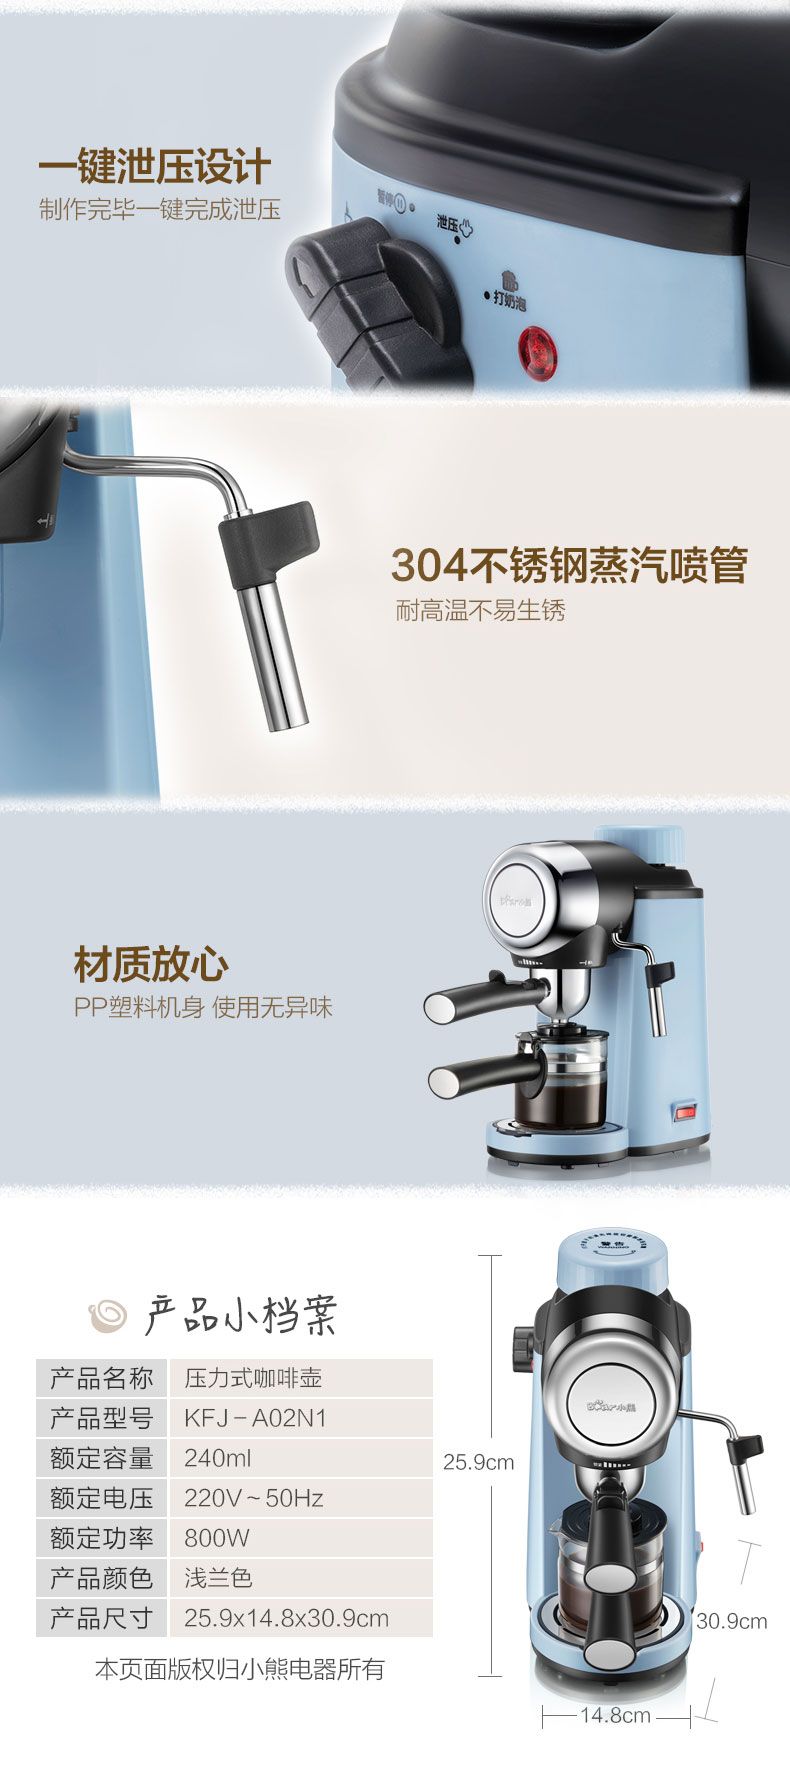 小熊/BEAR 意式咖啡机家用全自动小型煮咖啡壶商用高压萃取蒸汽打奶泡器KFJ-A02N1